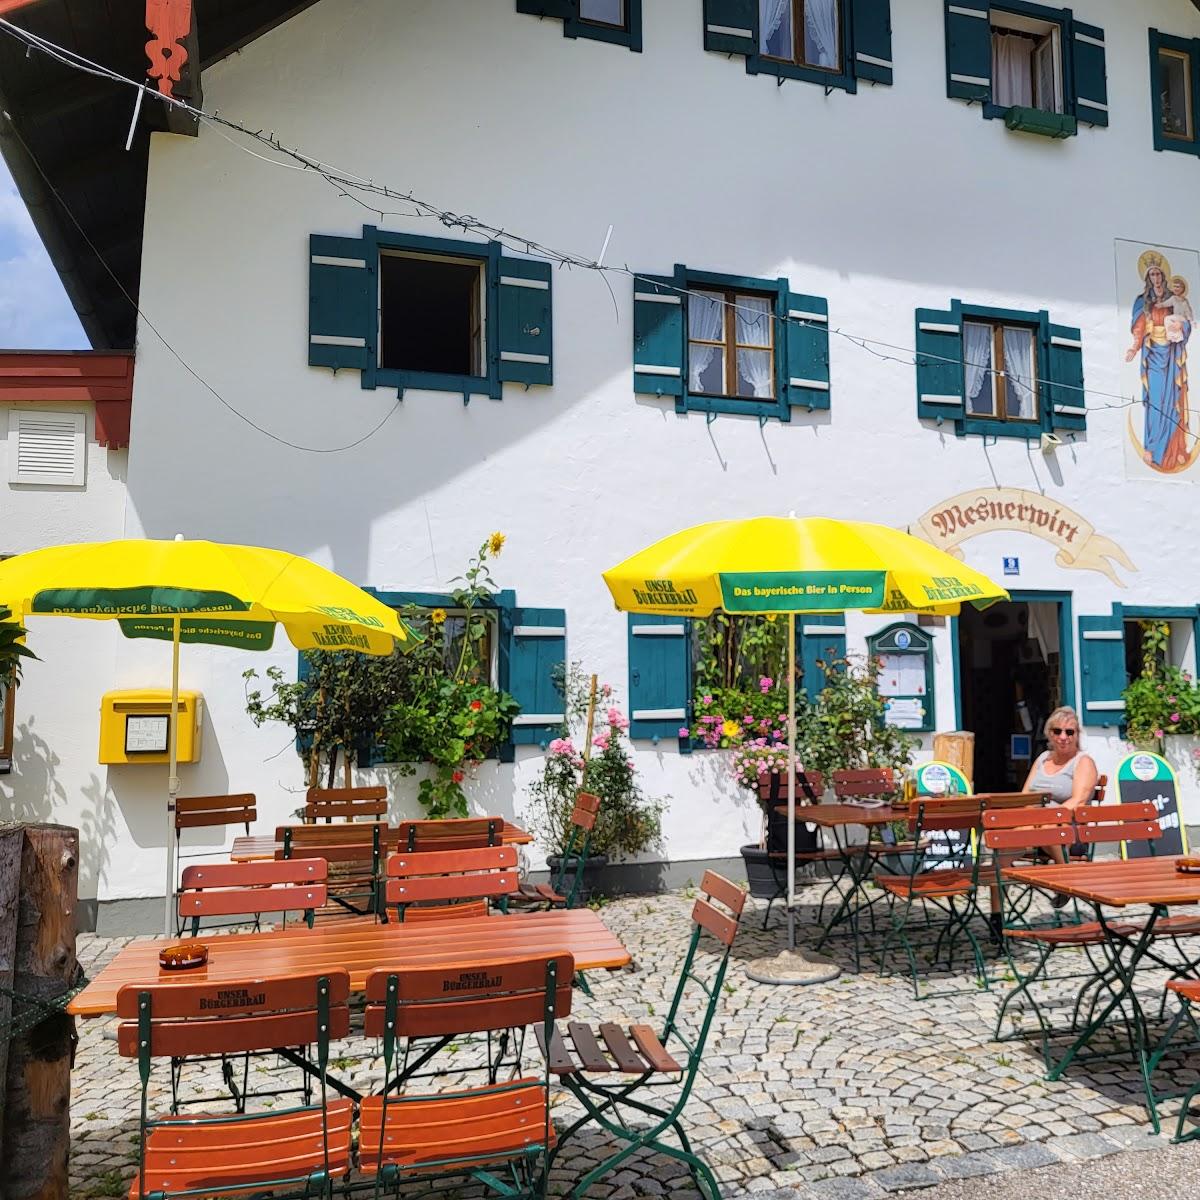 Restaurant "Mesnerwirt" in Marktschellenberg